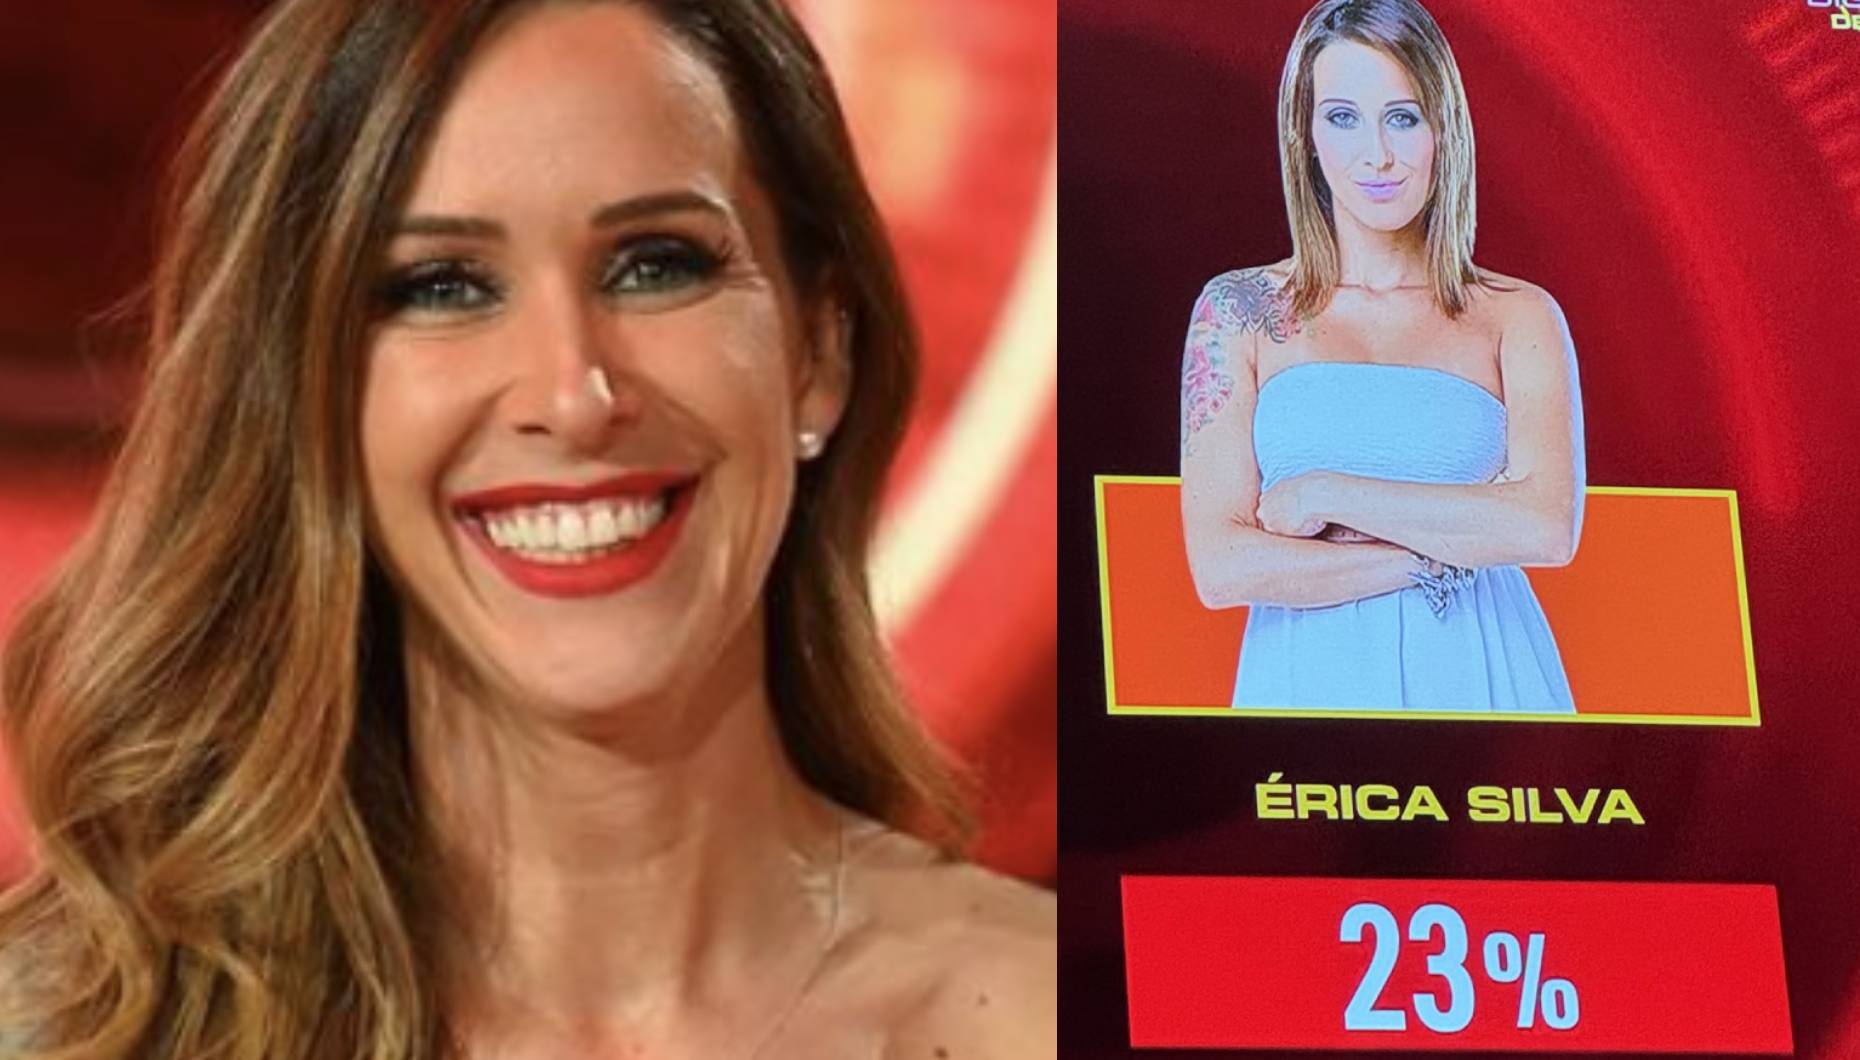 Érica Silva fora da final do "Big Brother - Desafio Final": "Dei tudo, ainda podia dar mais qualquer coisa"